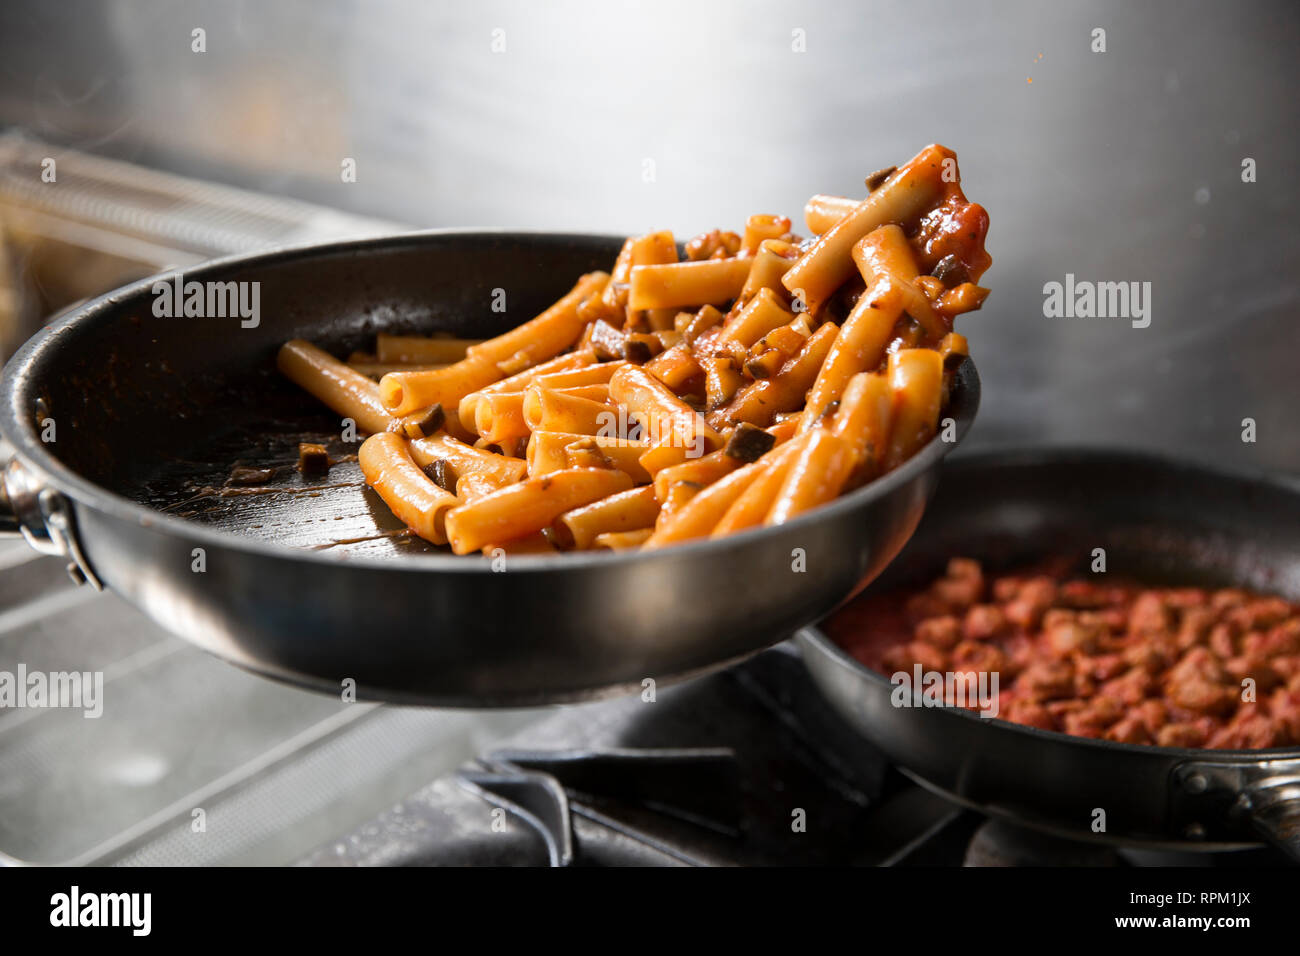 Primo piano di uno chef professionale la cottura di deliziosi piatti di pasta in una padella la fase finale prima di servire il suo piatto. Foto Stock